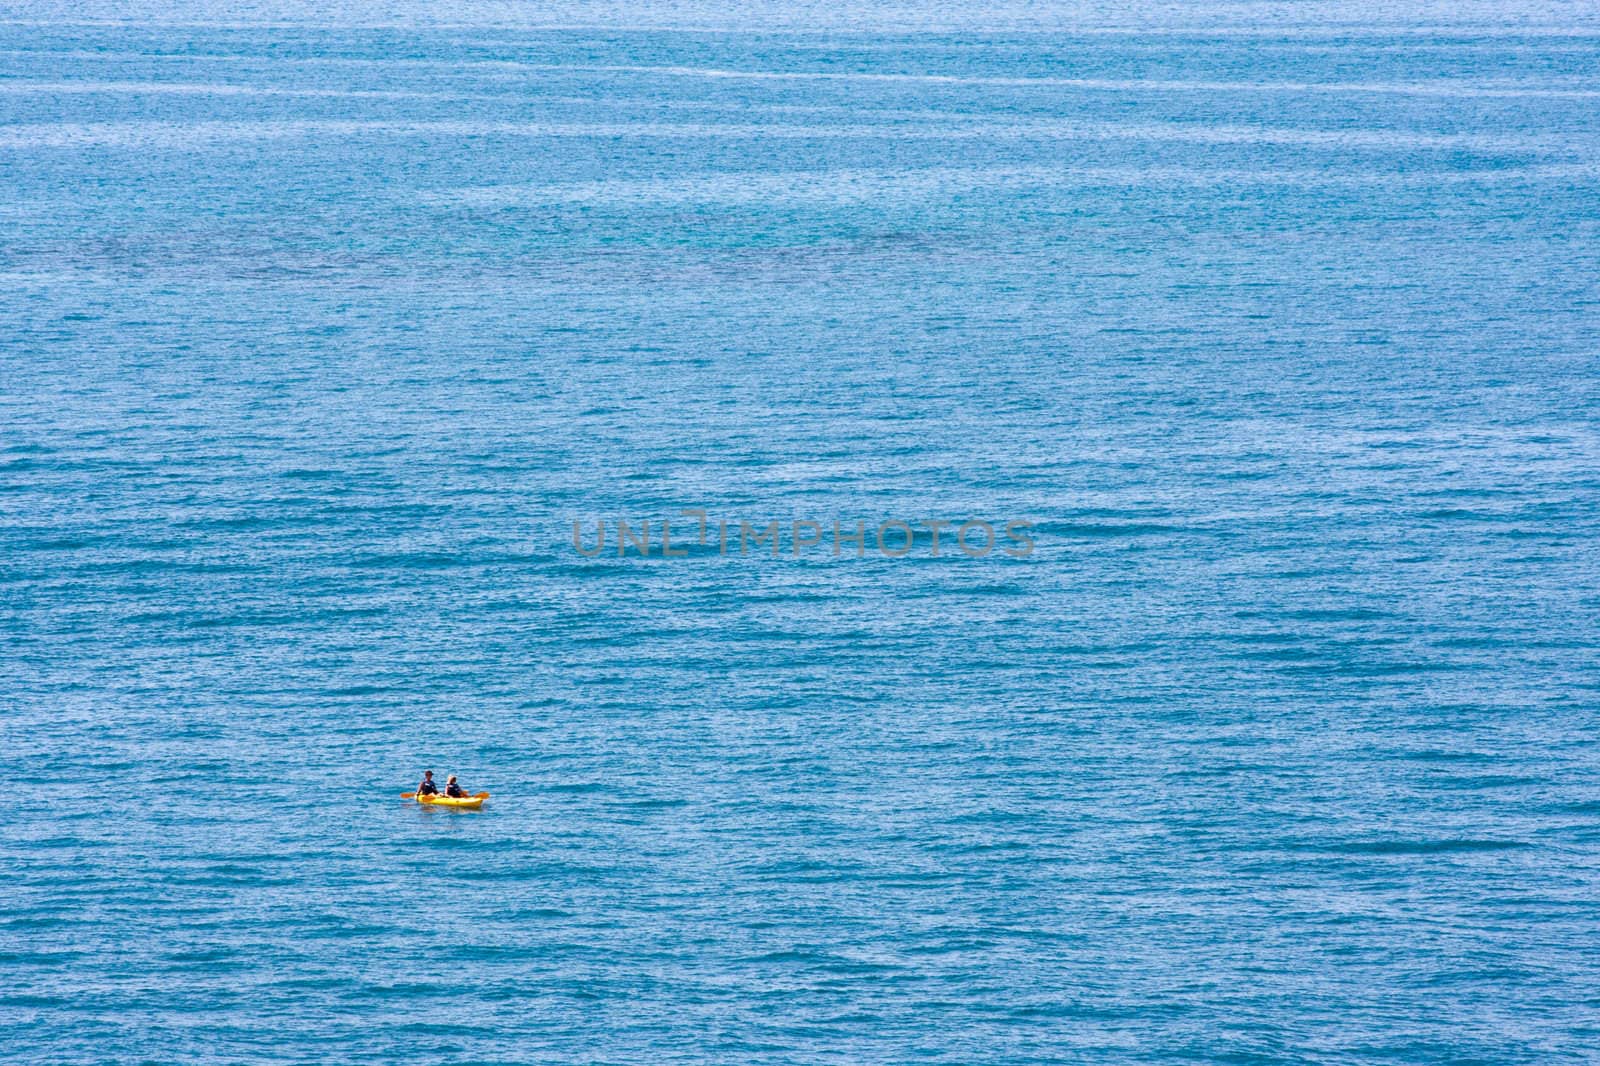 Ocean and Kayak by sbonk